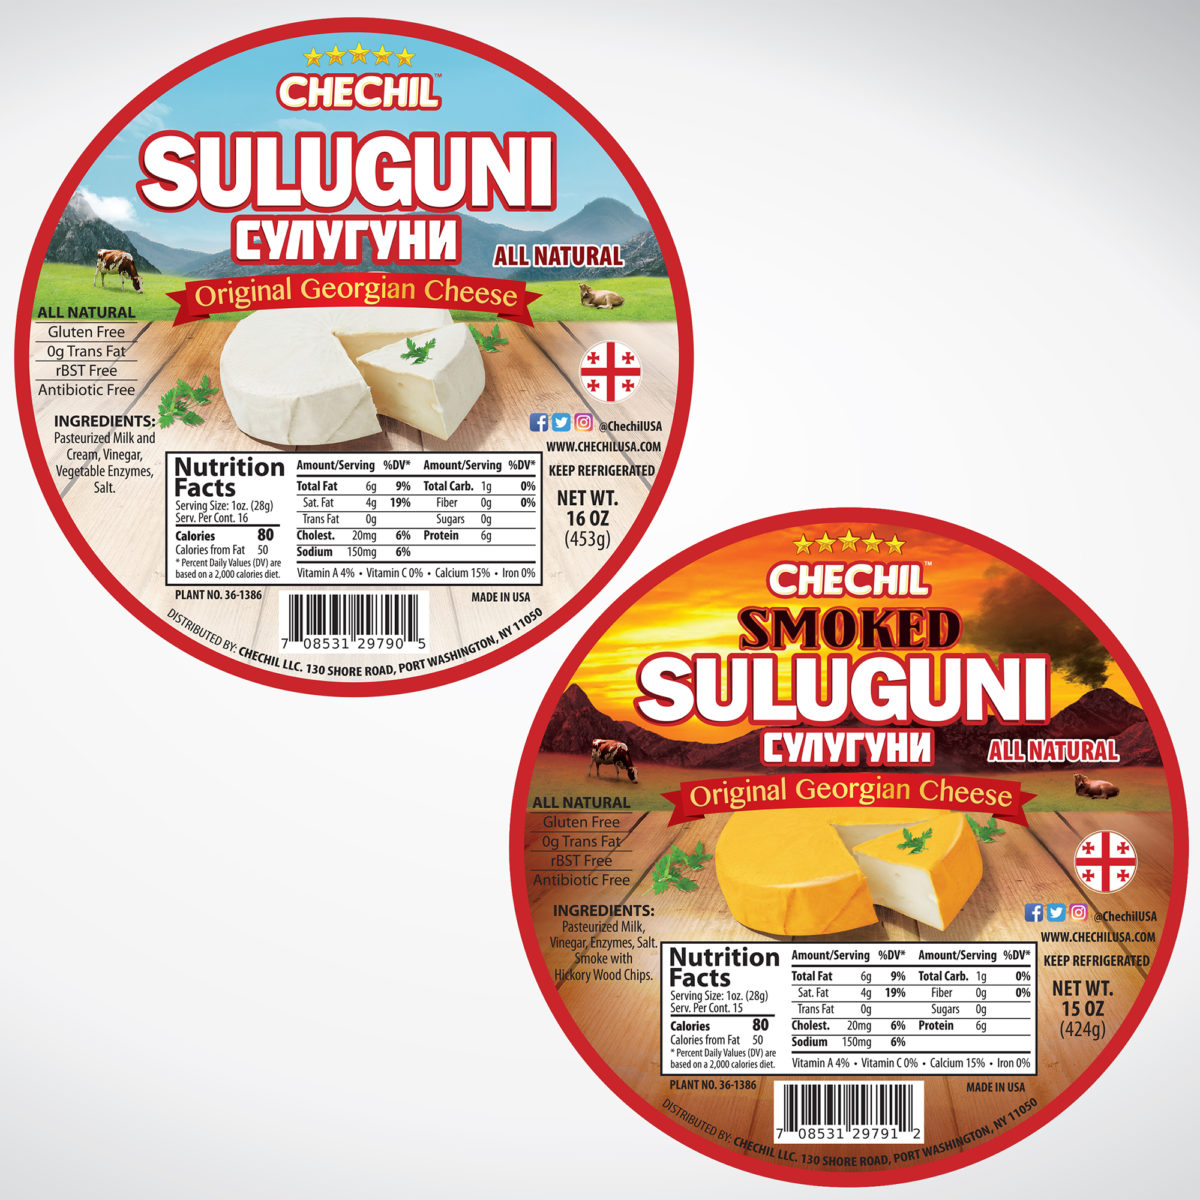 Chechil Suluguni Labels